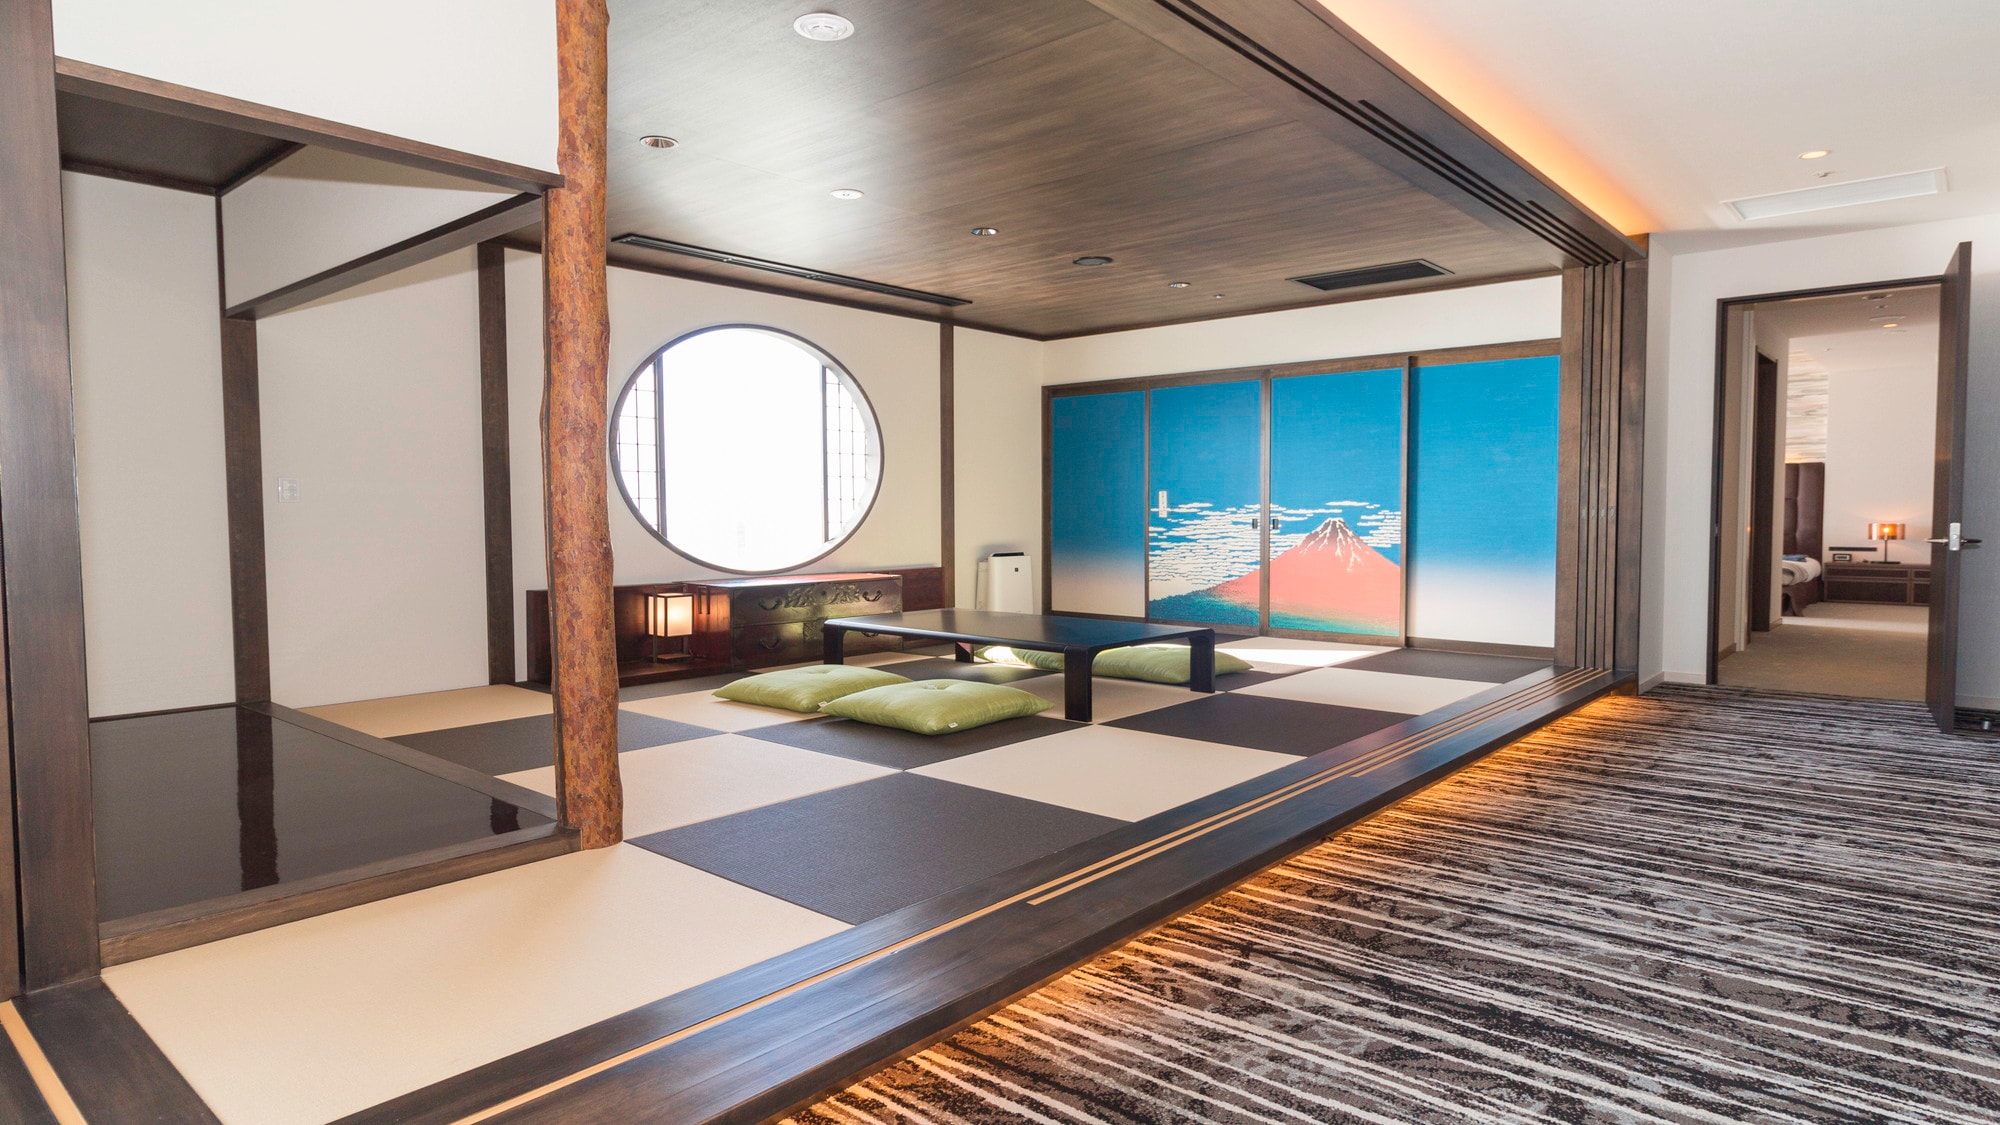 Bangkit kecil suite kerajaan memiliki suasana Jepang (bagian belakang gambar adalah kamar tidur)